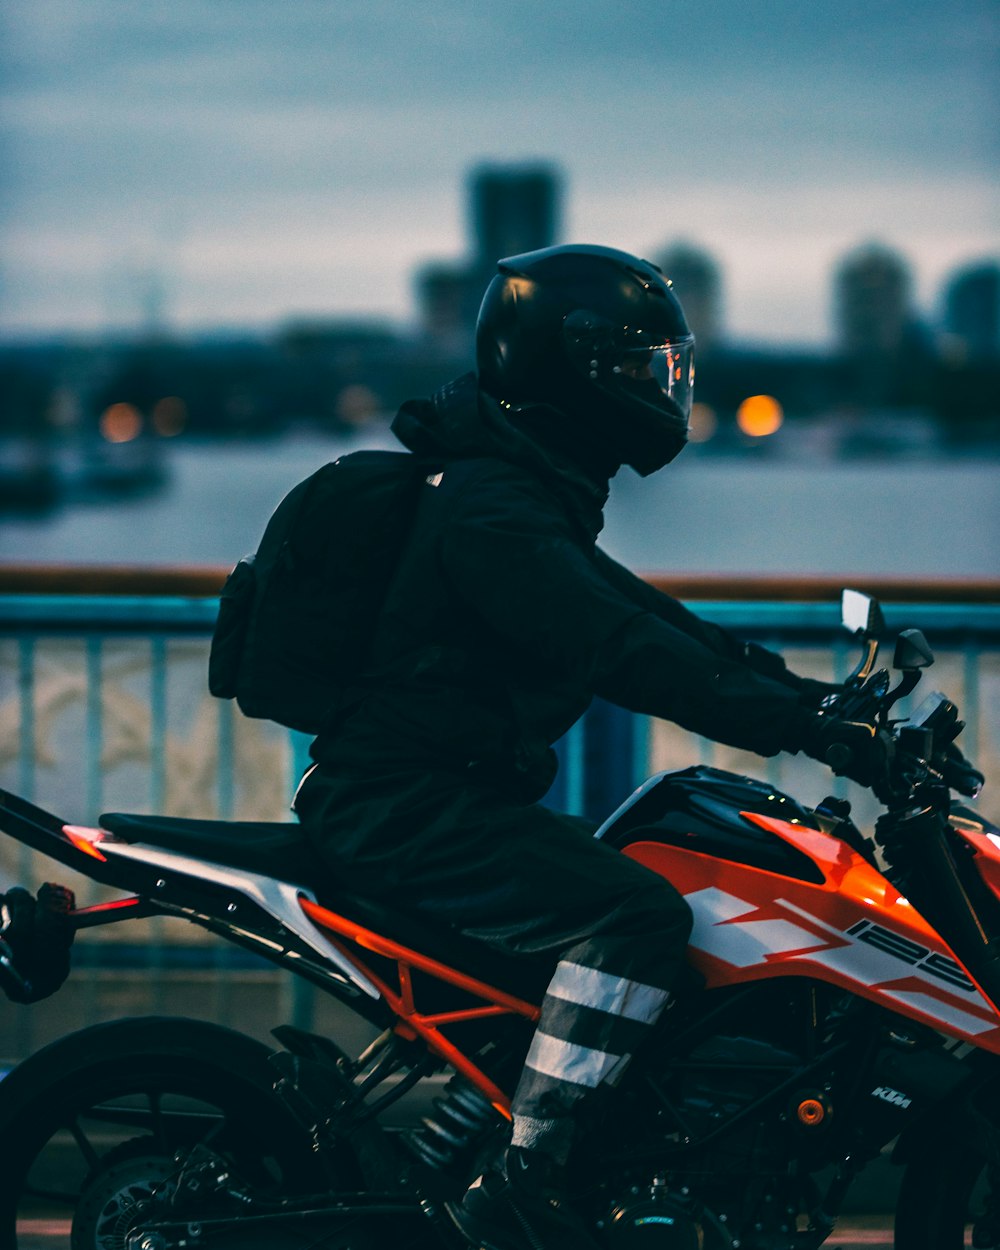 man in black jacket riding orange and black motorcycle